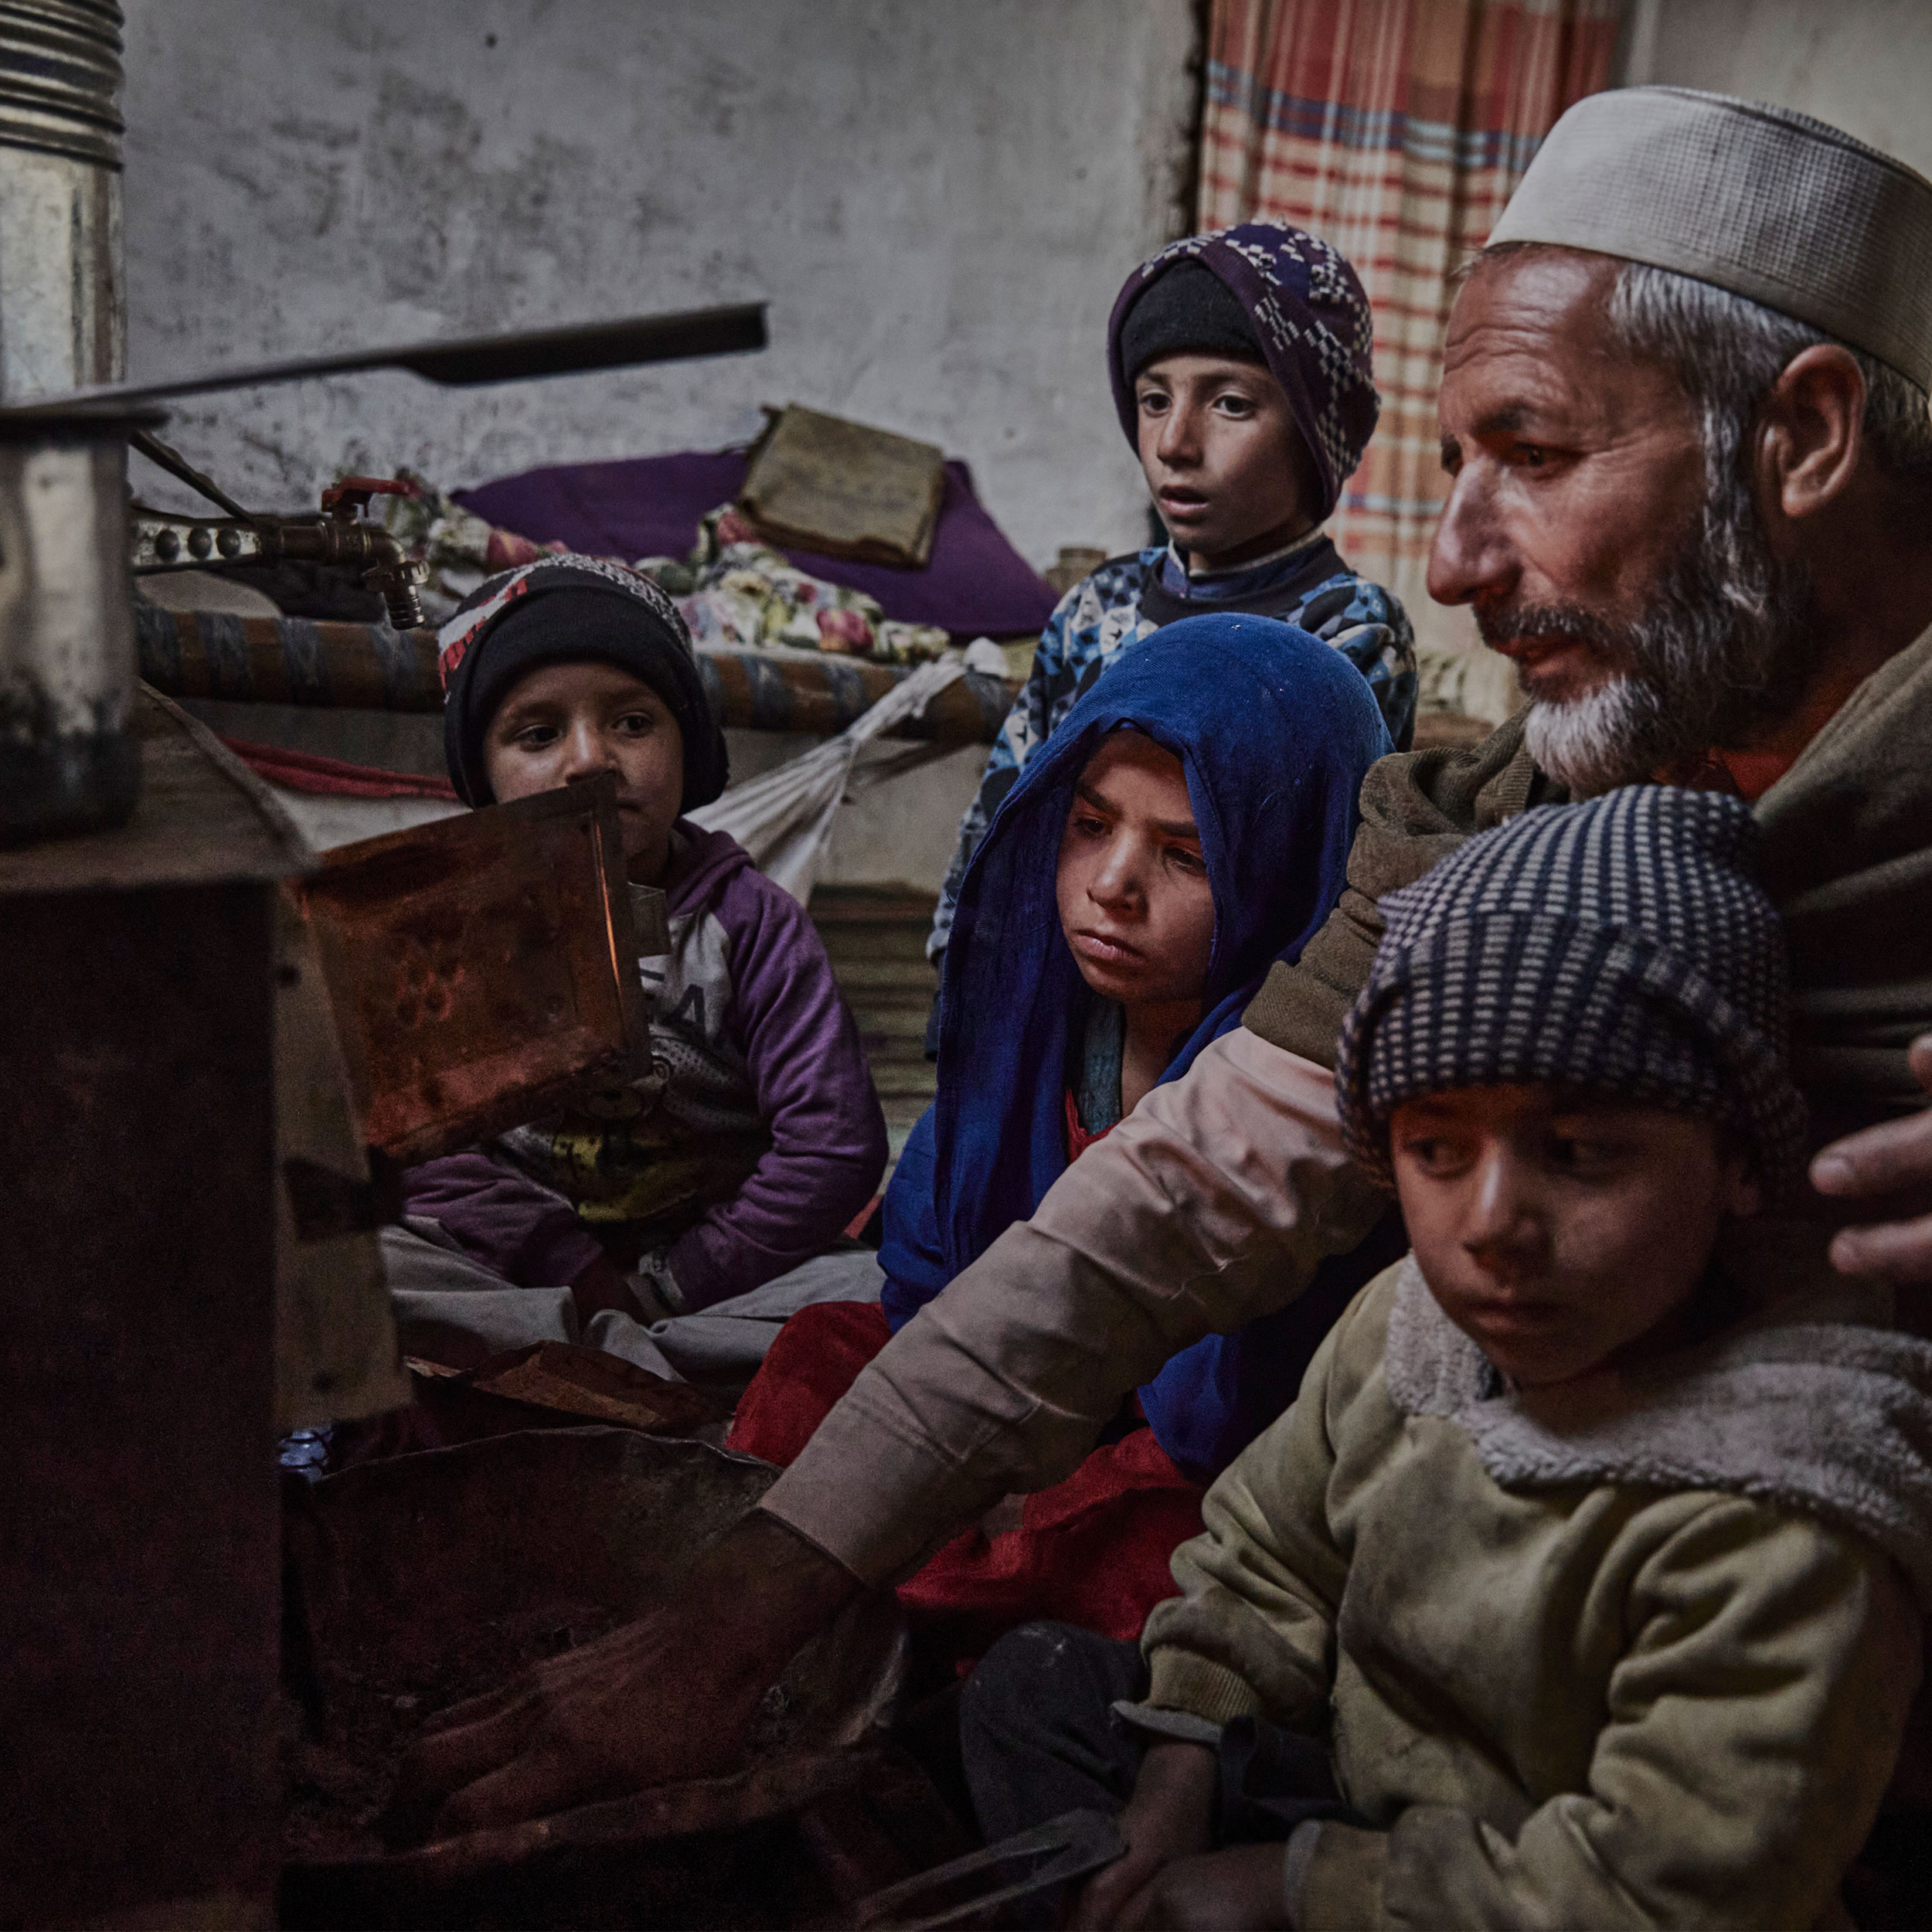 Flüchtlingsfamilie in Afghanistan vor dem Ofen